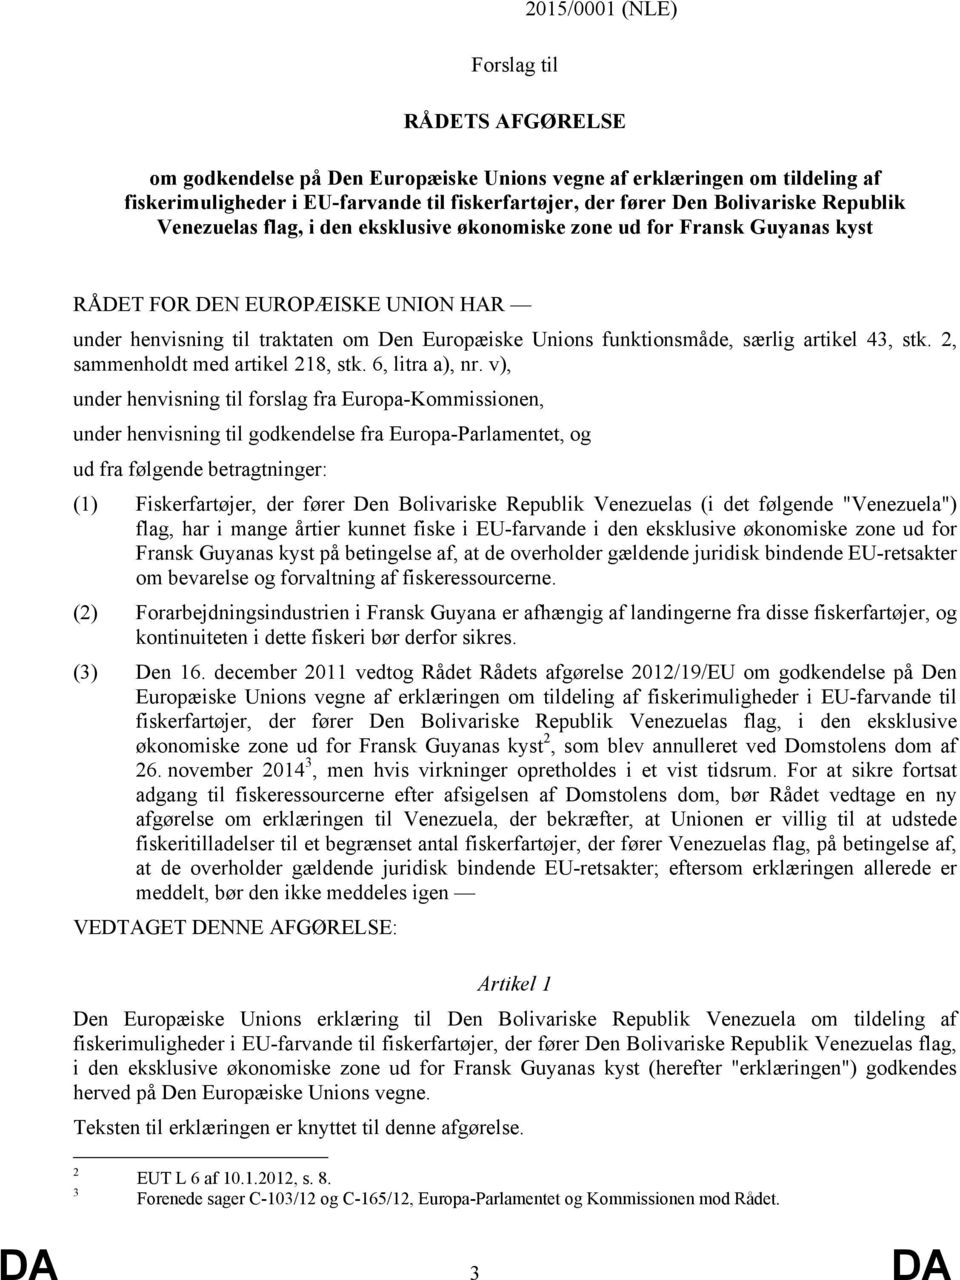 v), under henvisning til forslag fra Europa-Kommissionen, under henvisning til godkendelse fra Europa-Parlamentet, og ud fra følgende betragtninger: (1) Fiskerfartøjer, der fører Den Bolivariske